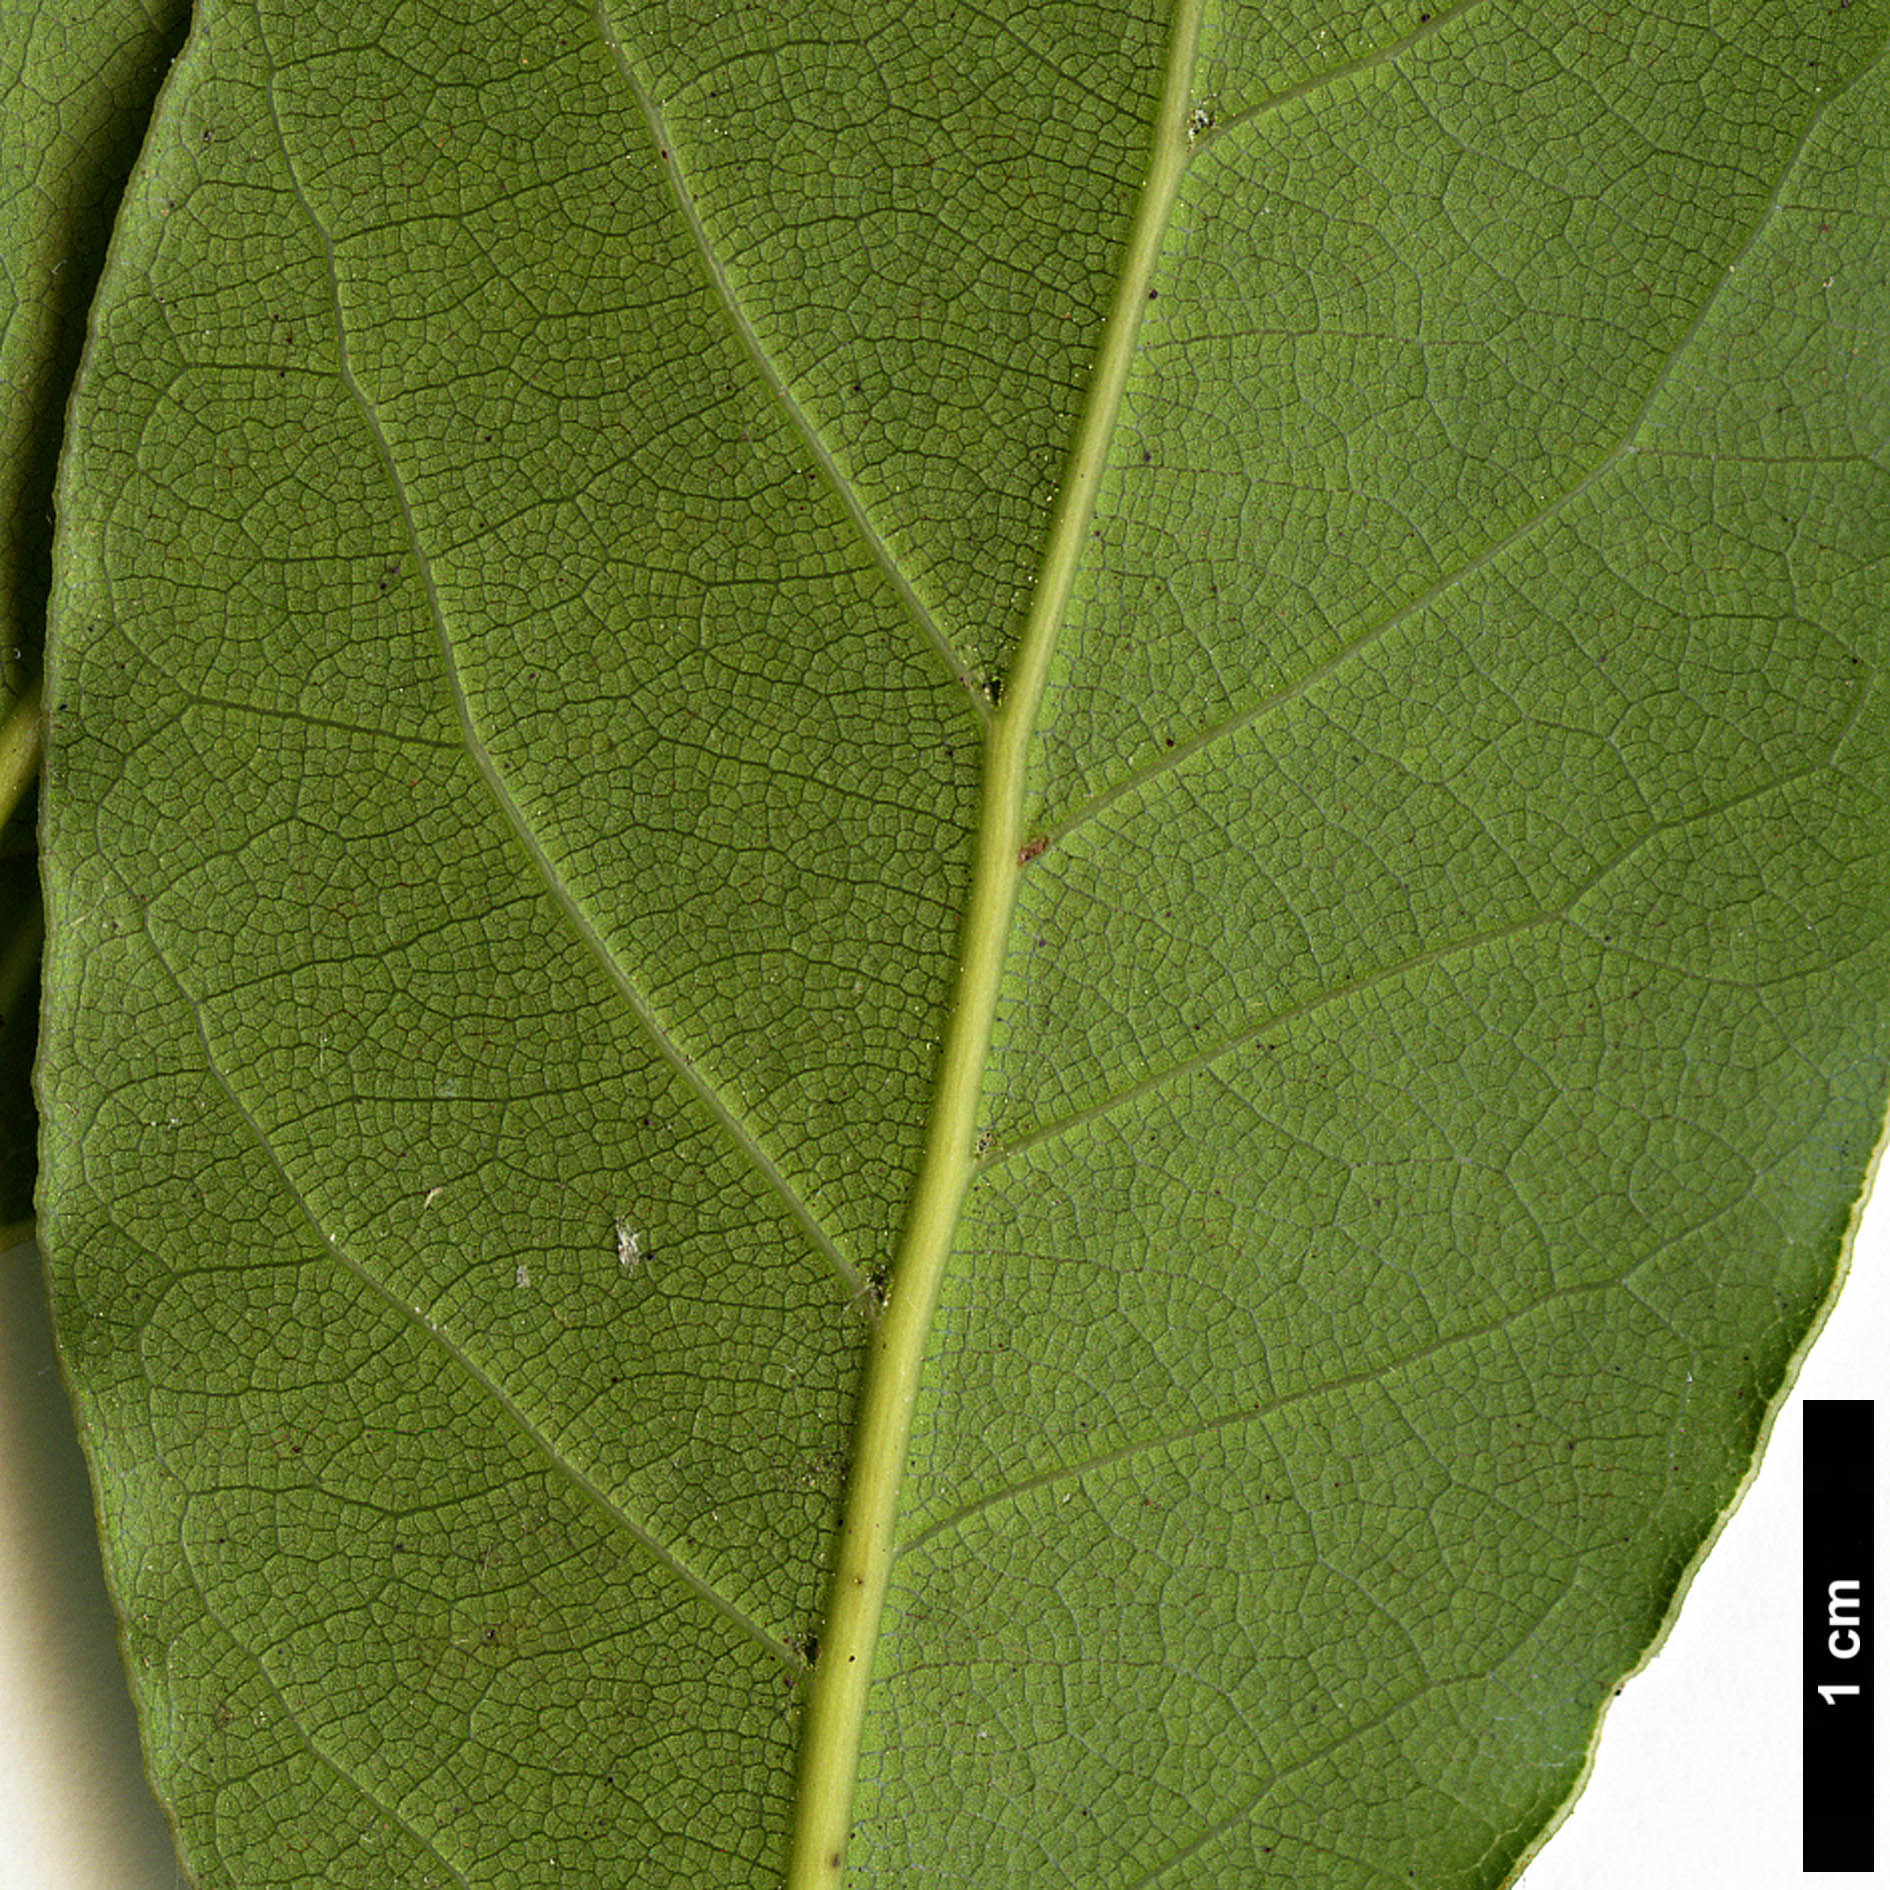 High resolution image: Family: Lauraceae - Genus: Laurus - Taxon: nobilis